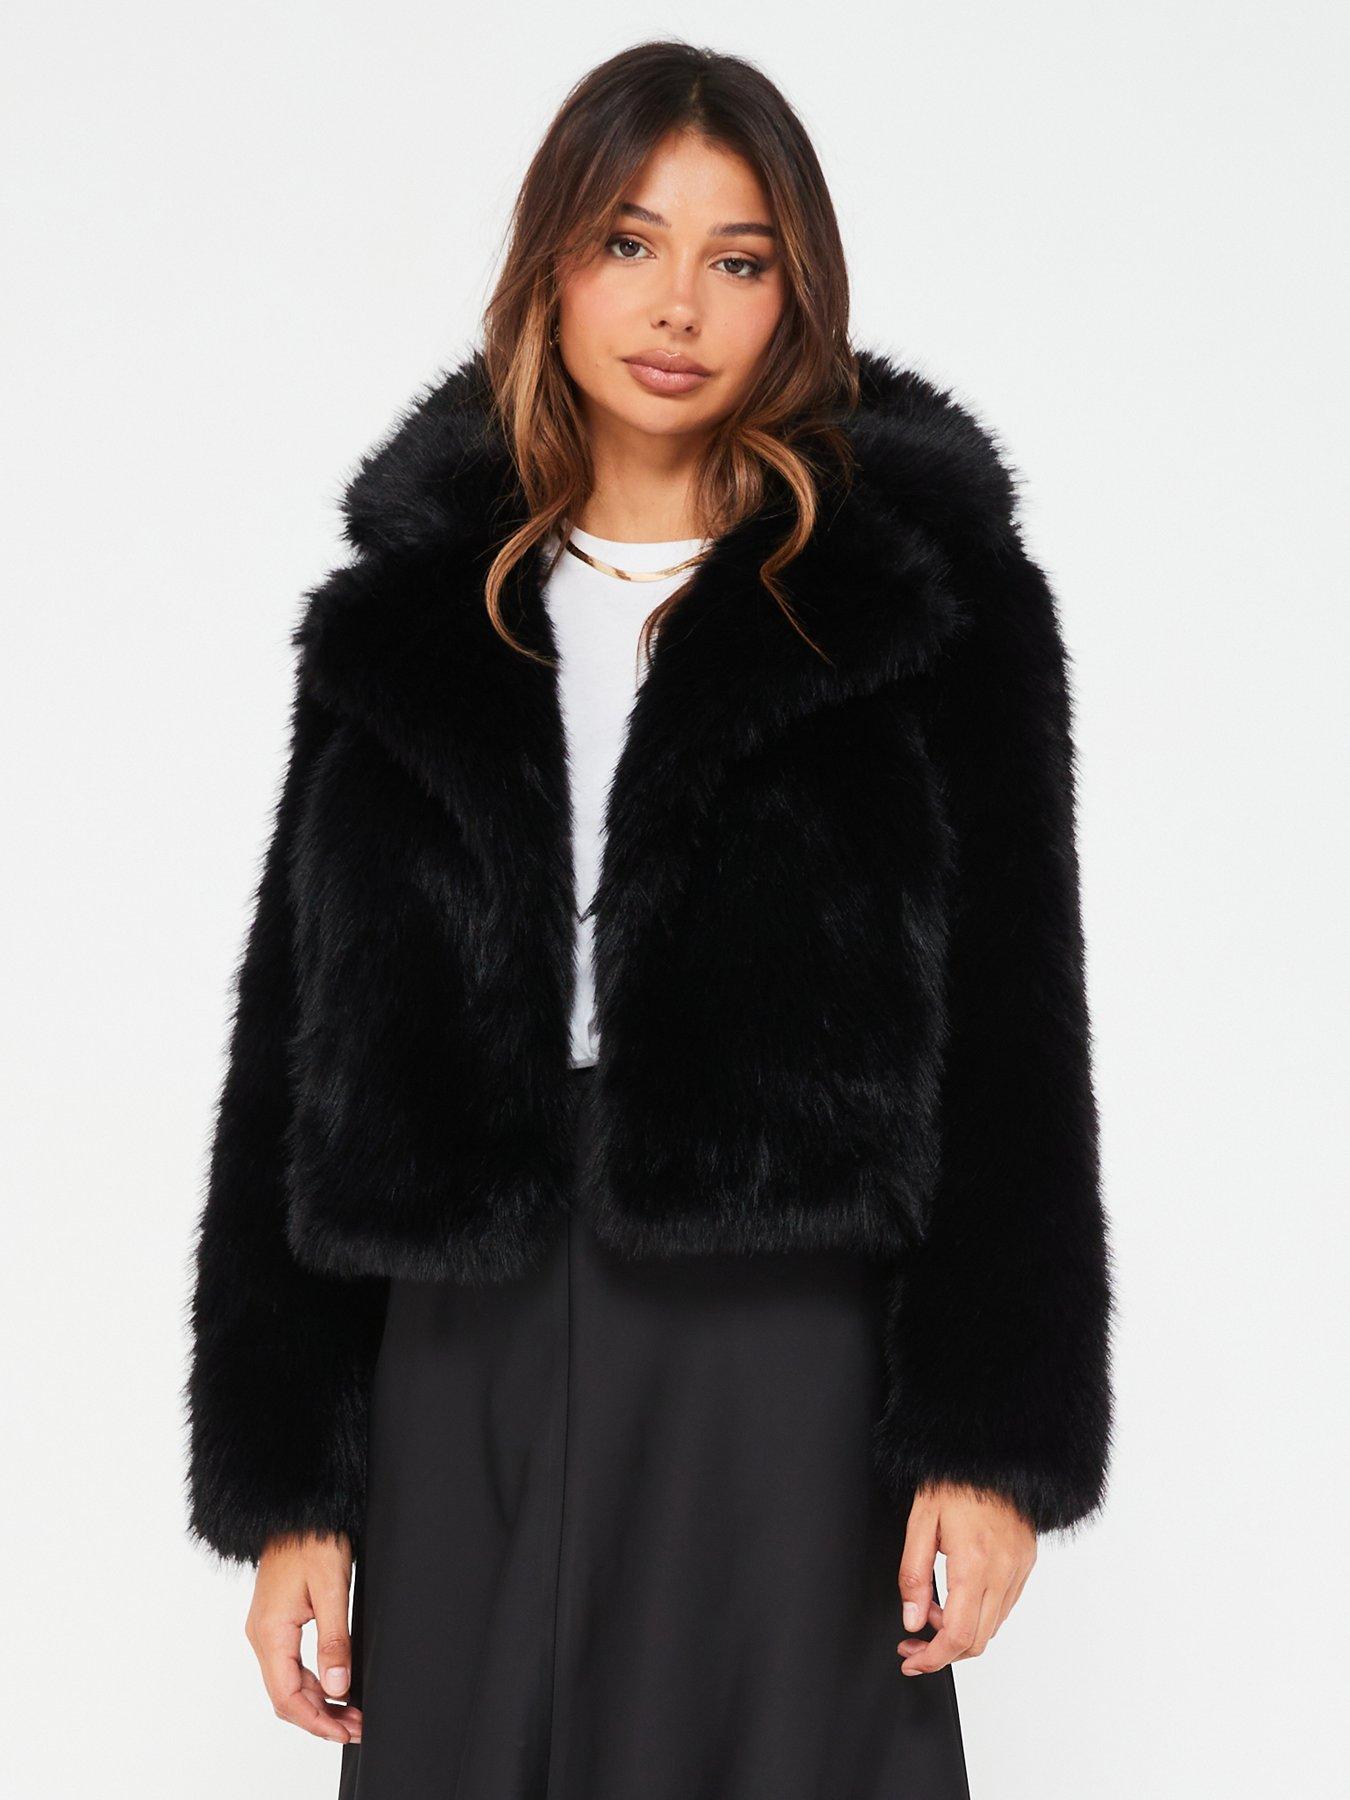 Short Faux Fur Jacket - Black - Ladies